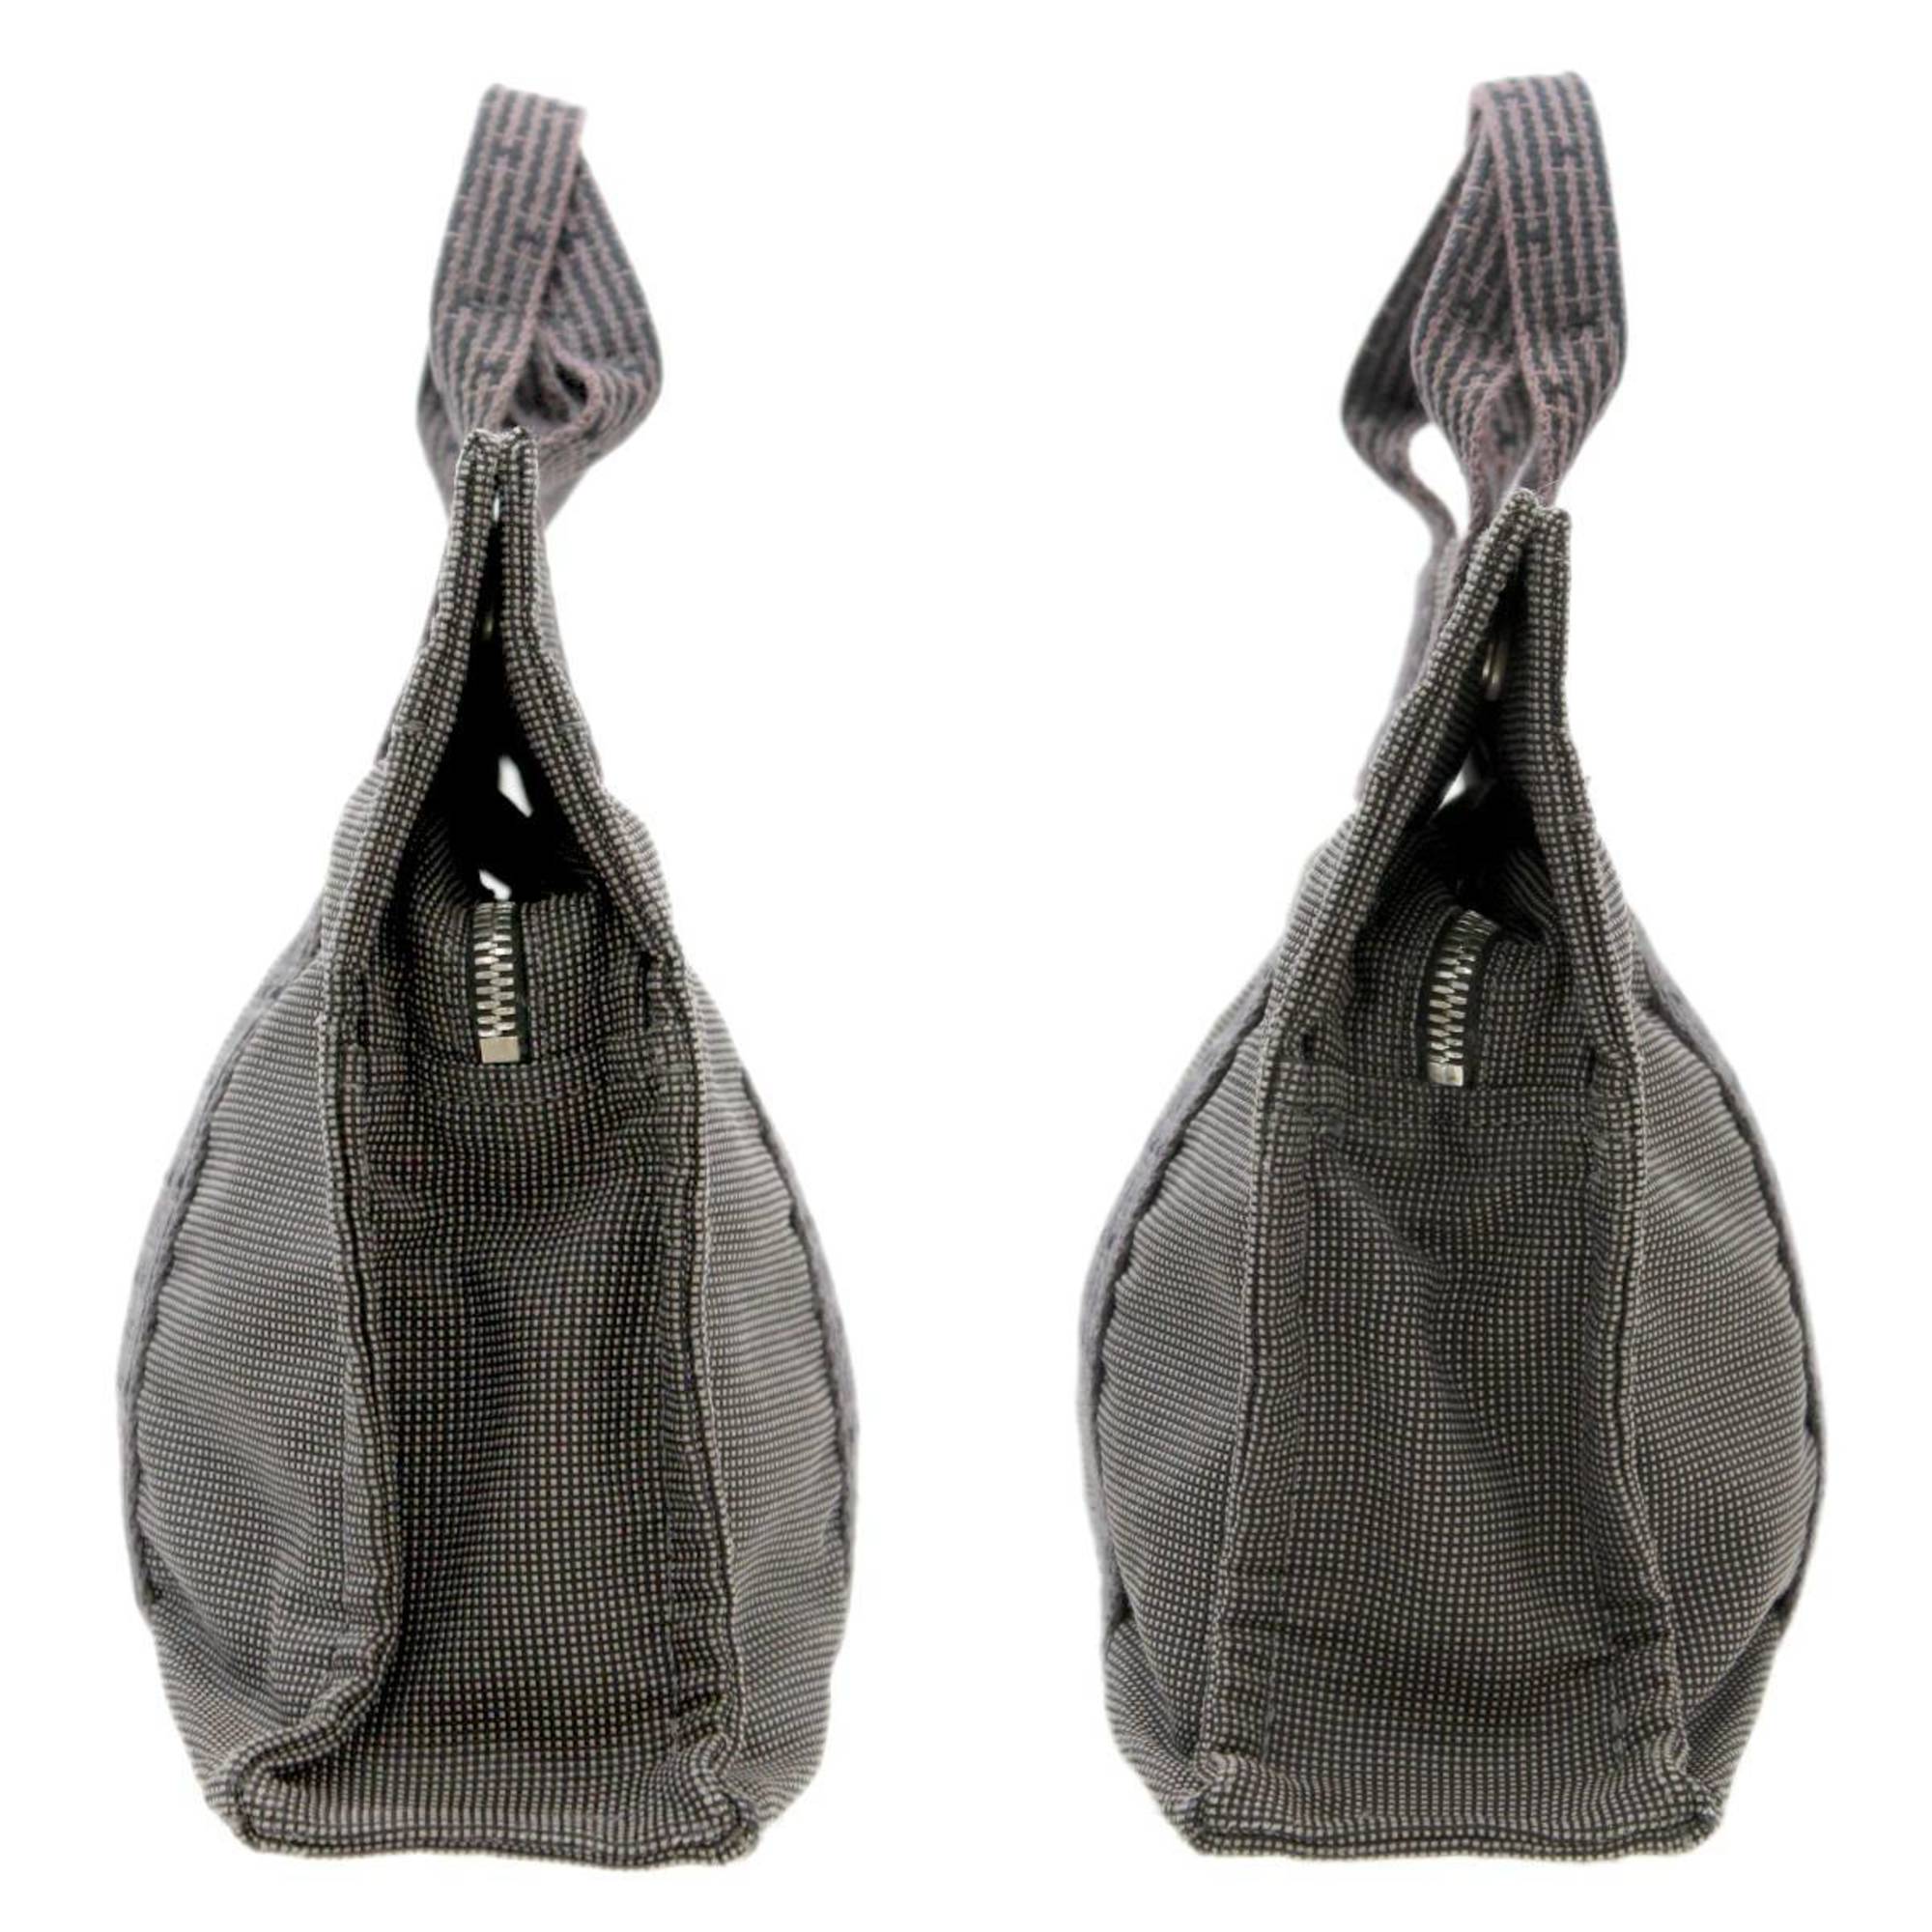 HERM Hermes Yale Line PM Tote Bag Handbag Charcoal Gray